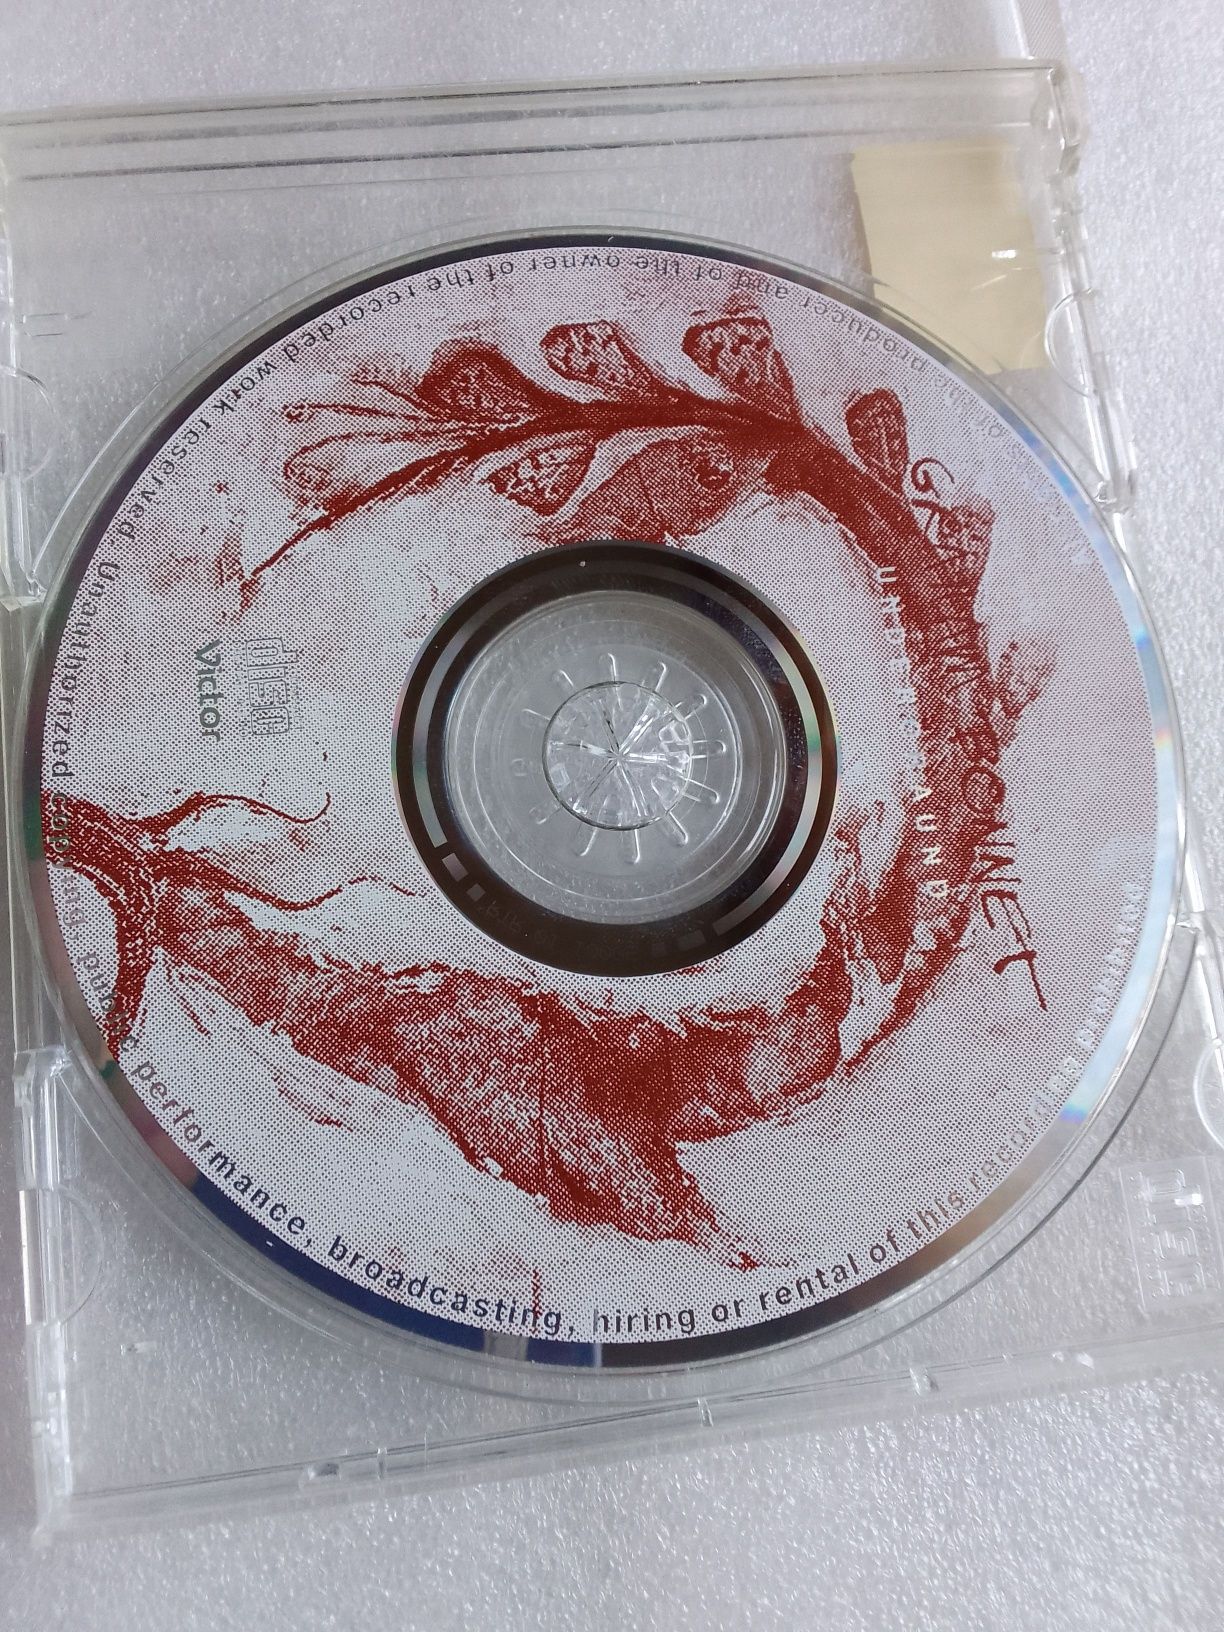 GRAHAM BONNET "Undergraund". CD Audio.